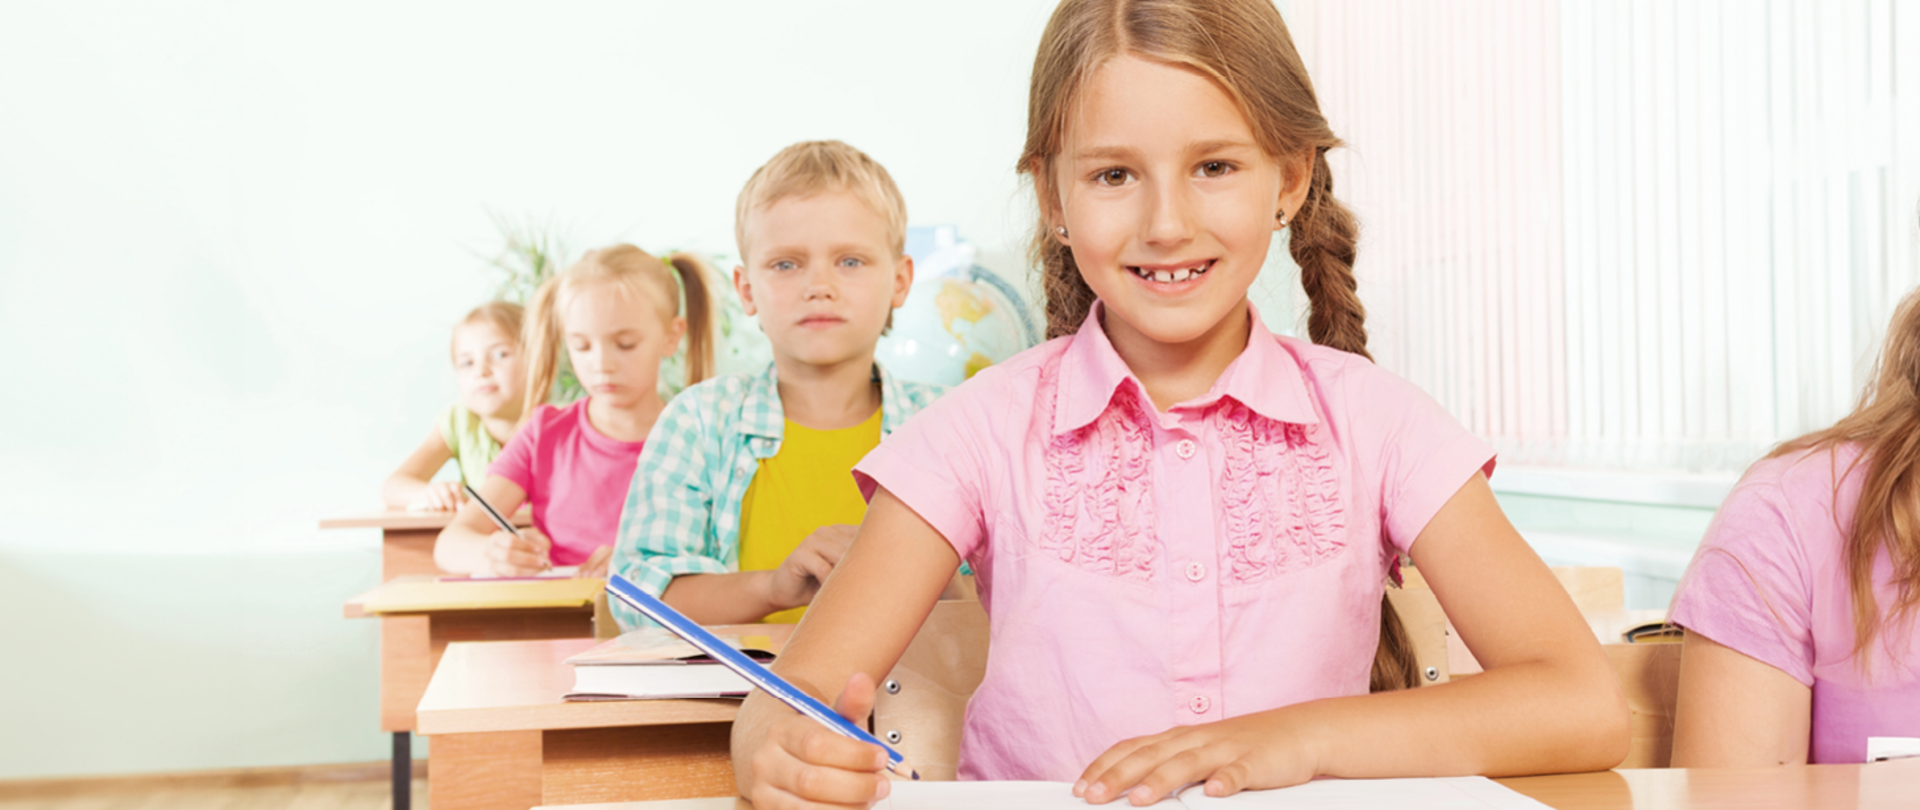 Dzieci siedzące w szkolnych ławkach, jedno za drugim. Na pierwszym planie uśmiechnięta dziewczynka w różowej koszulce z kredką w ręku, za dziewczynką siedzi chłopiec z otwartą książką. Na dalszym planie widać dwie dziewczynki siedzące jedna za drugą. 